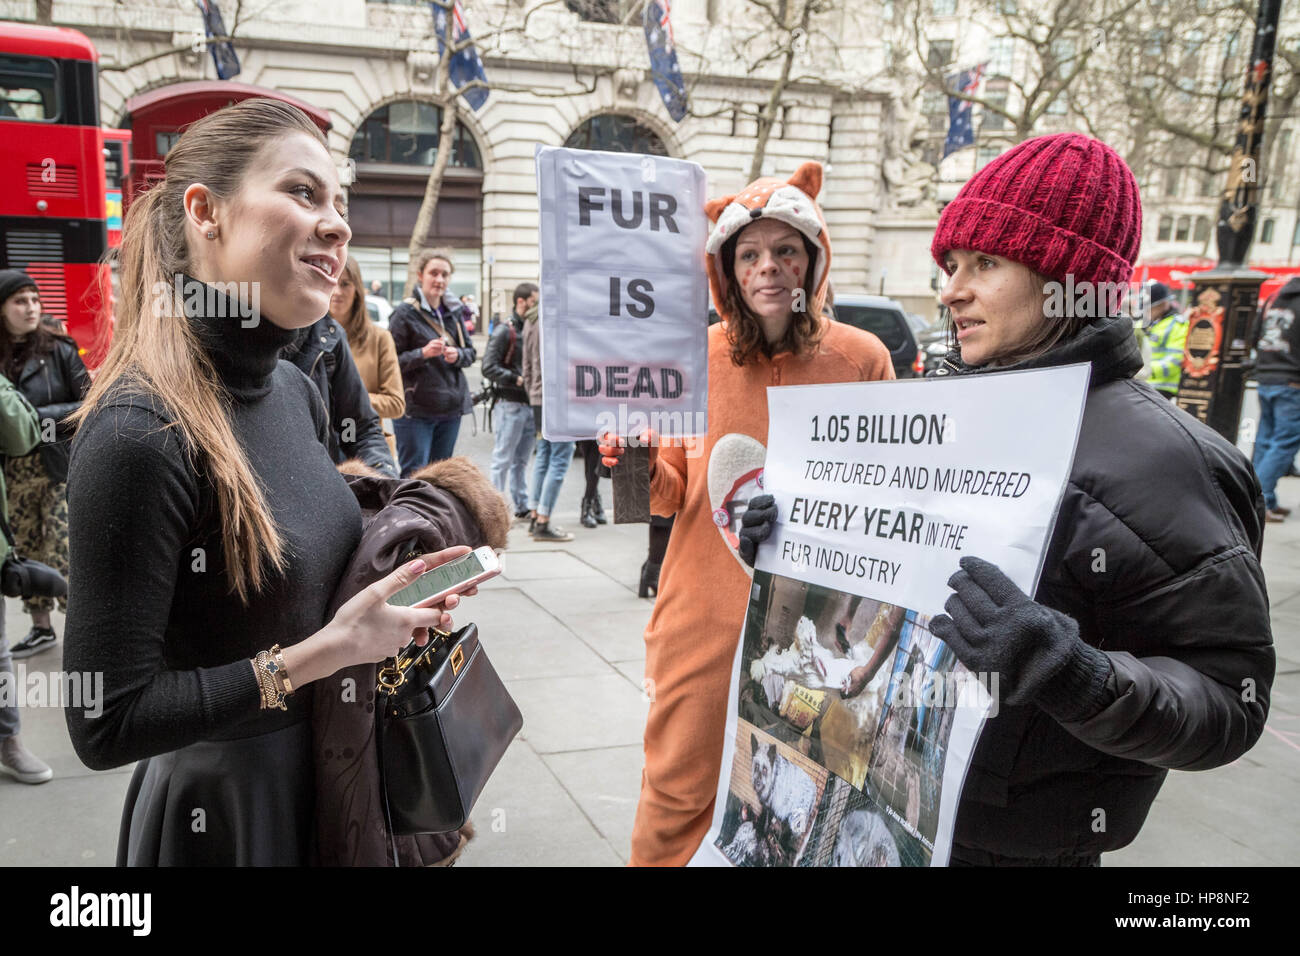 Londres, Reino Unido. 19 Feb, 2017. Anti-Fur protestas durante la Semana de la Moda de Londres: Guy Corbishley de crédito/Alamy Live News Foto de stock